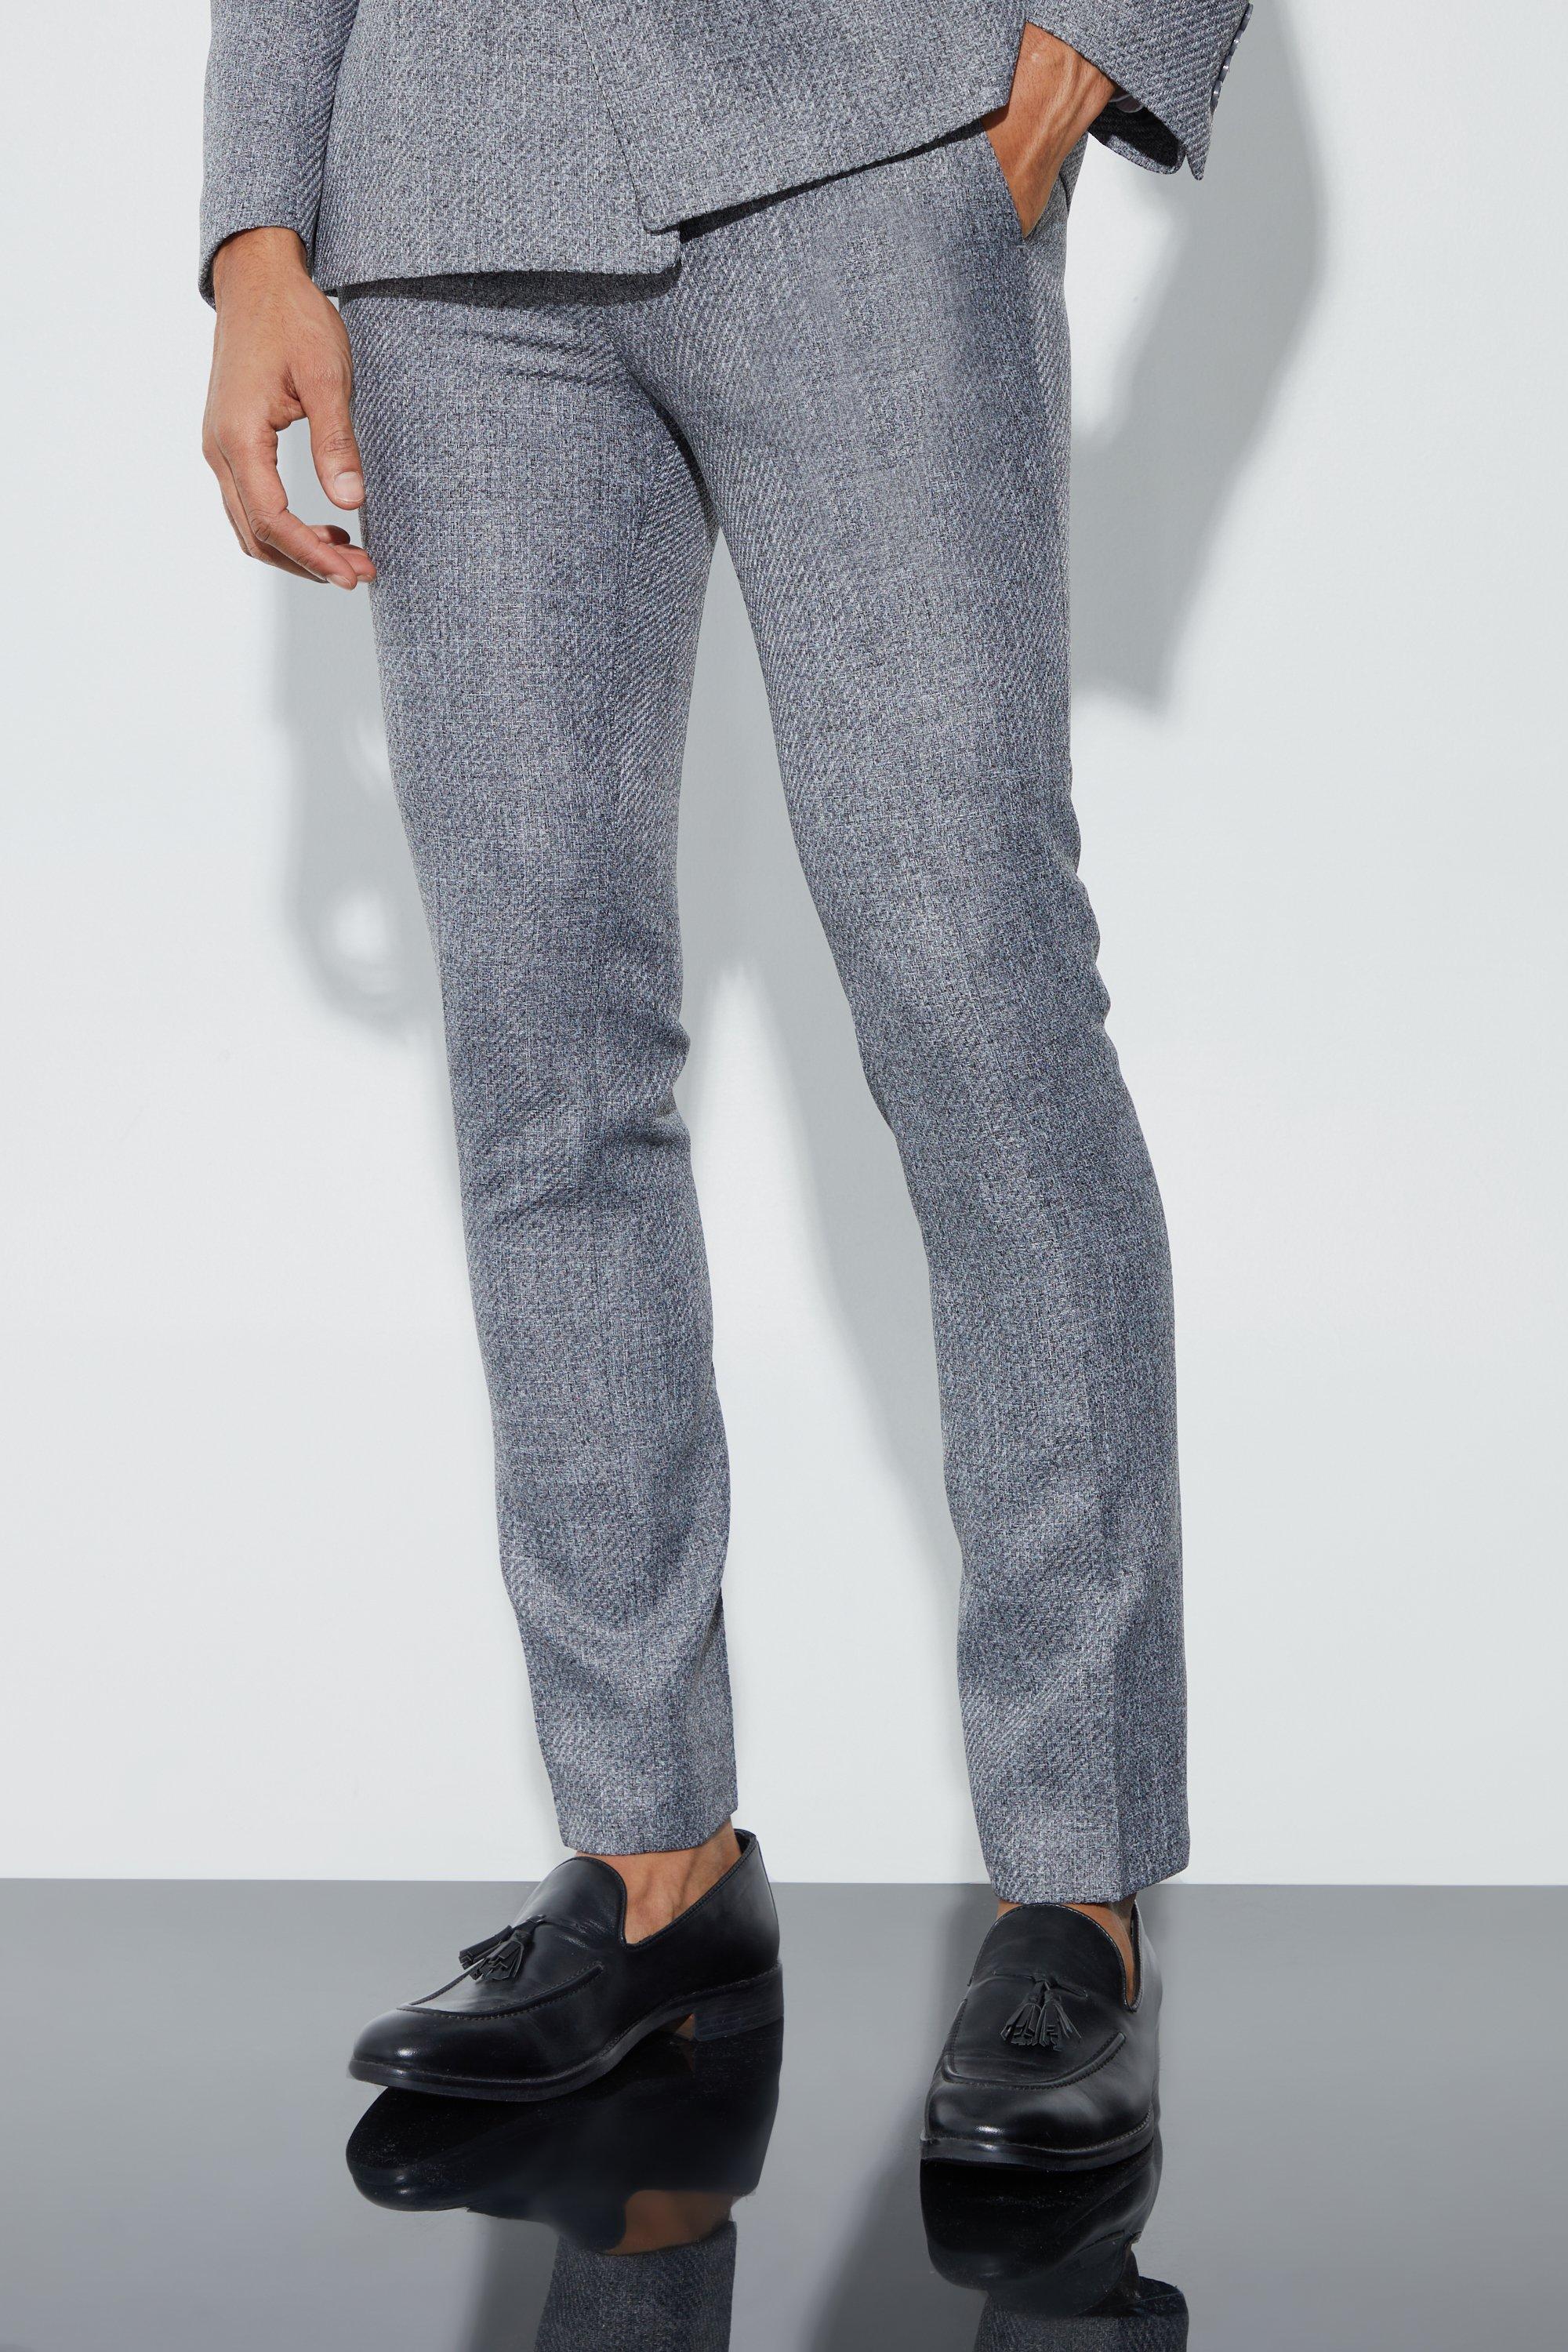 pantalon de costume skinny homme - gris - 32, gris